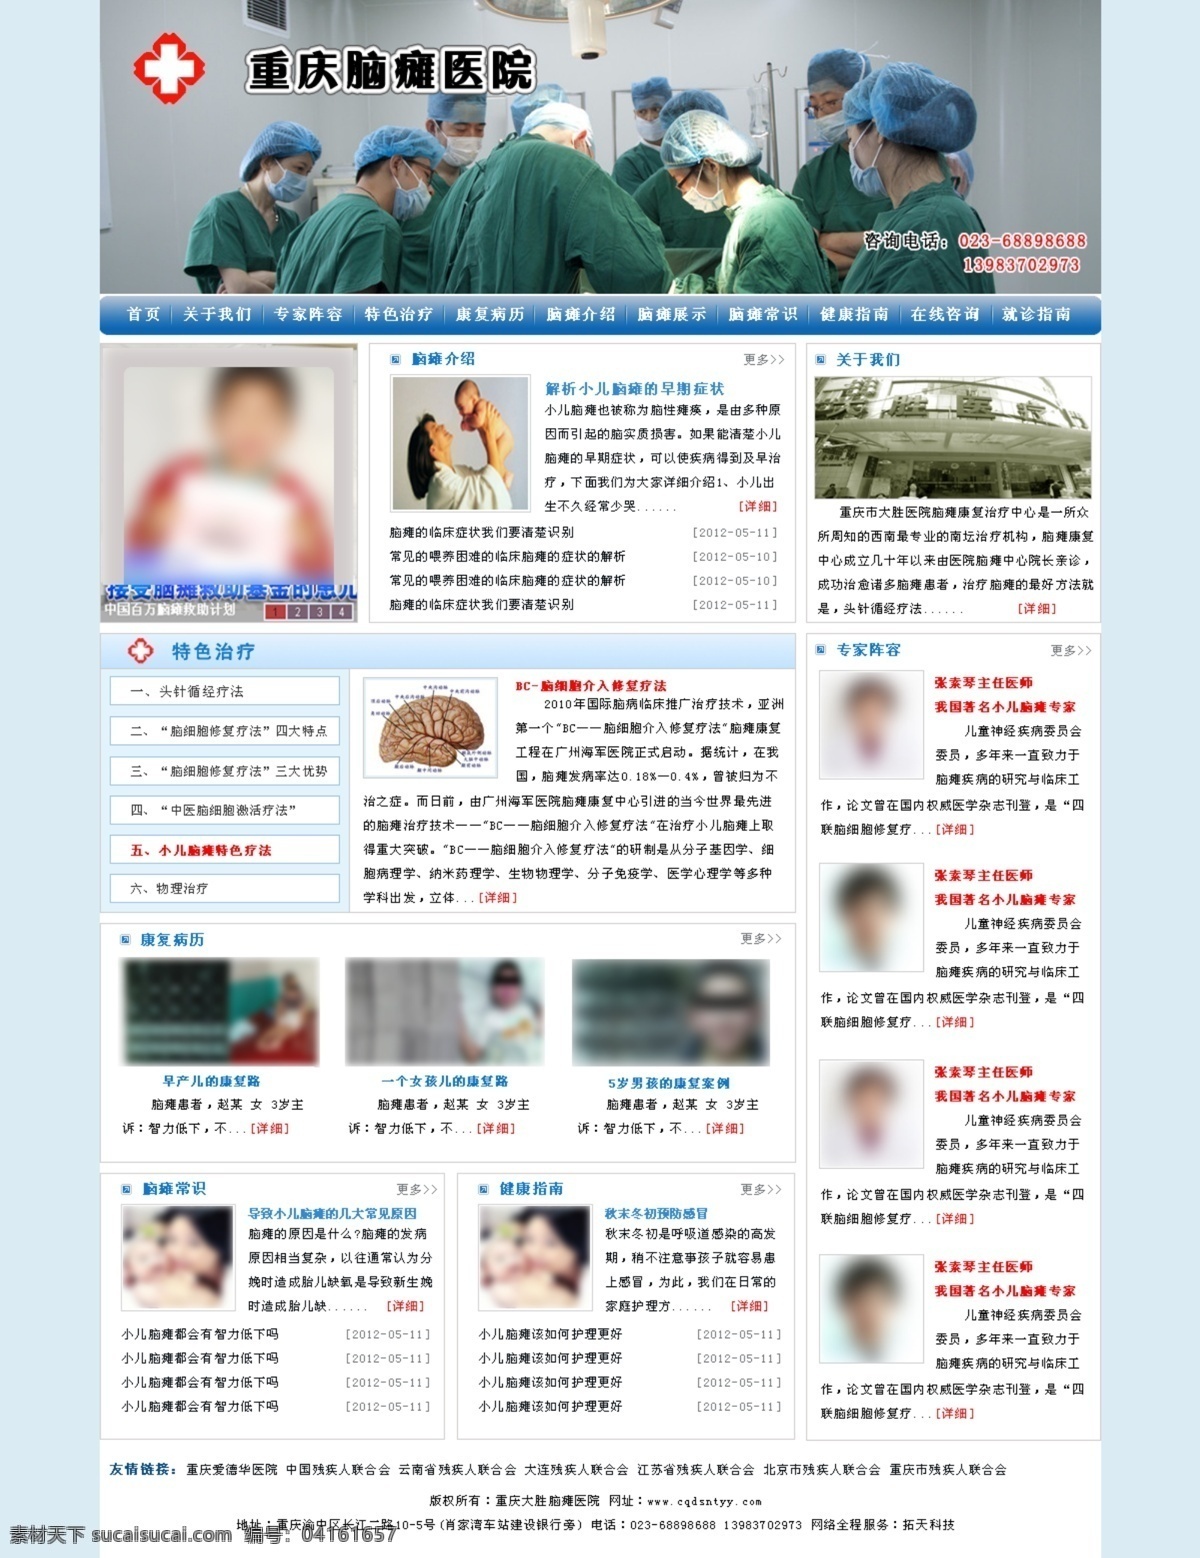 广告 护士 女士 网页模板 小孩 医生 源文件 中文模版 脑瘫 医院 网页设计 模板下载 脑瘫小孩 网页素材